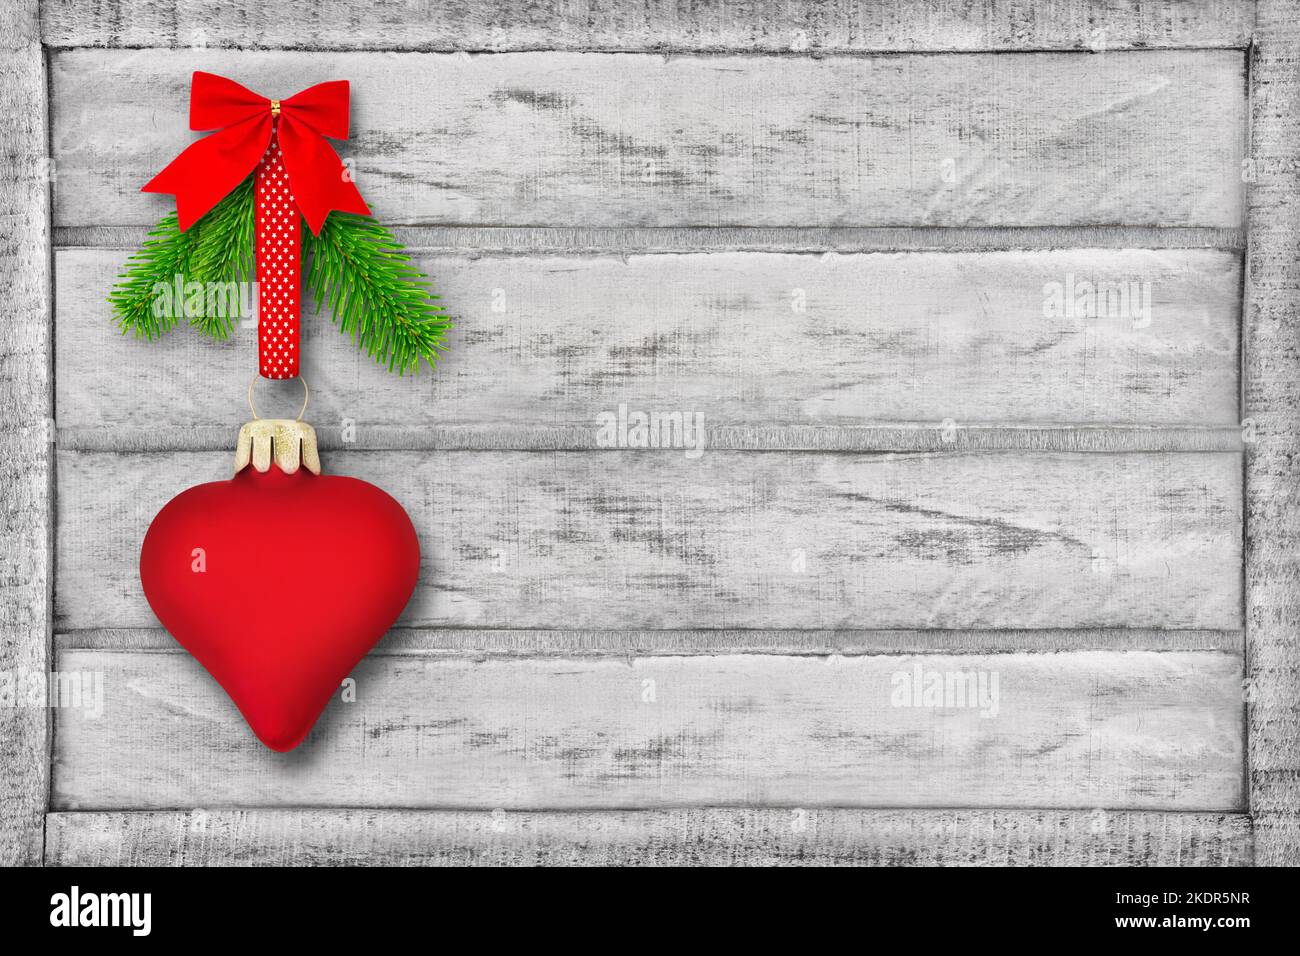 Decorazione natalizia con cuore rosso e rami di abete su fondo in legno Foto Stock